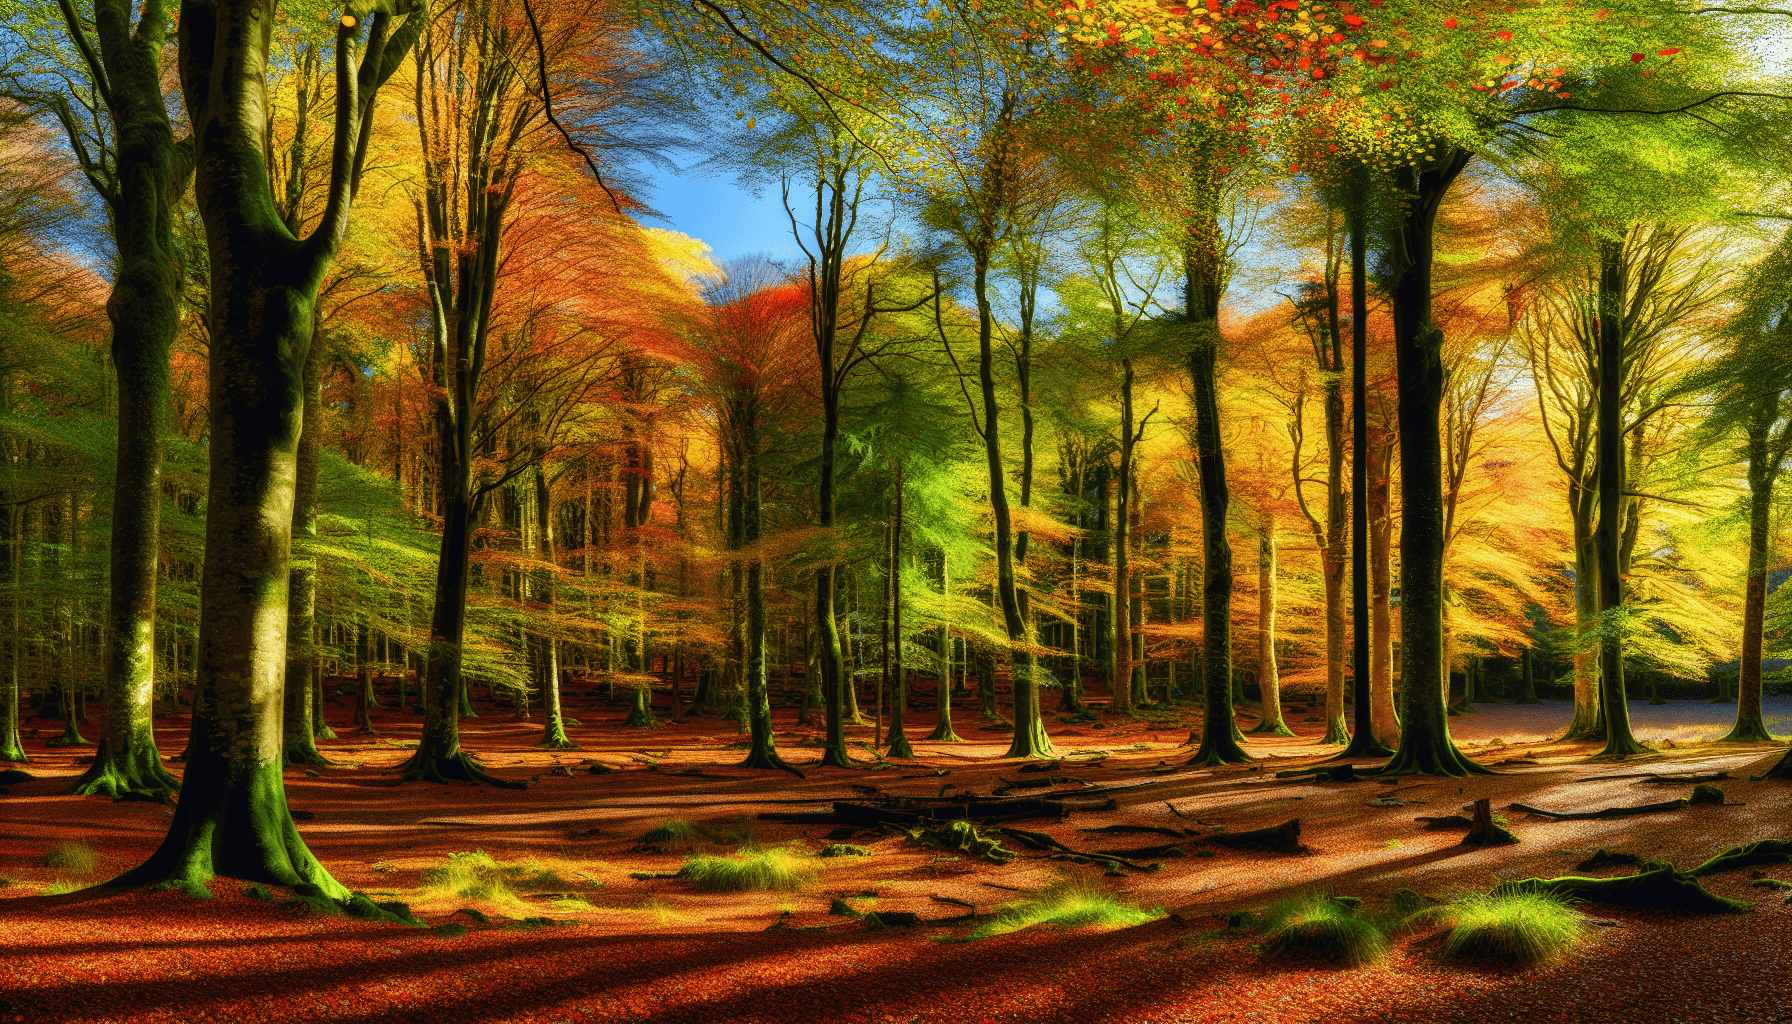 Vibrant autumn foliage in Ireland